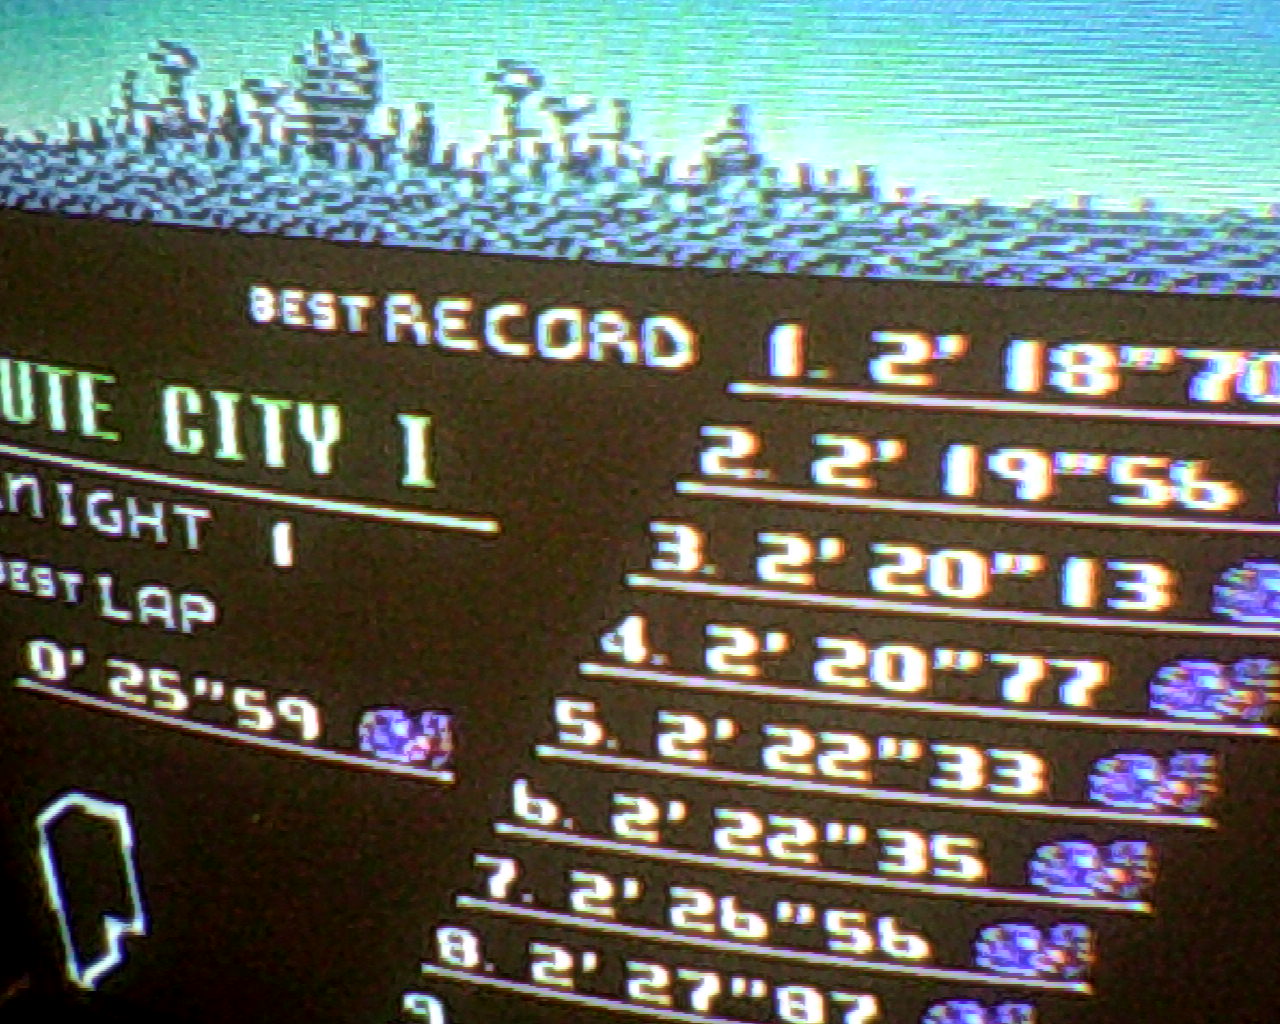 F-Zero: Mute City I [Beginner] time of 0:02:19.56